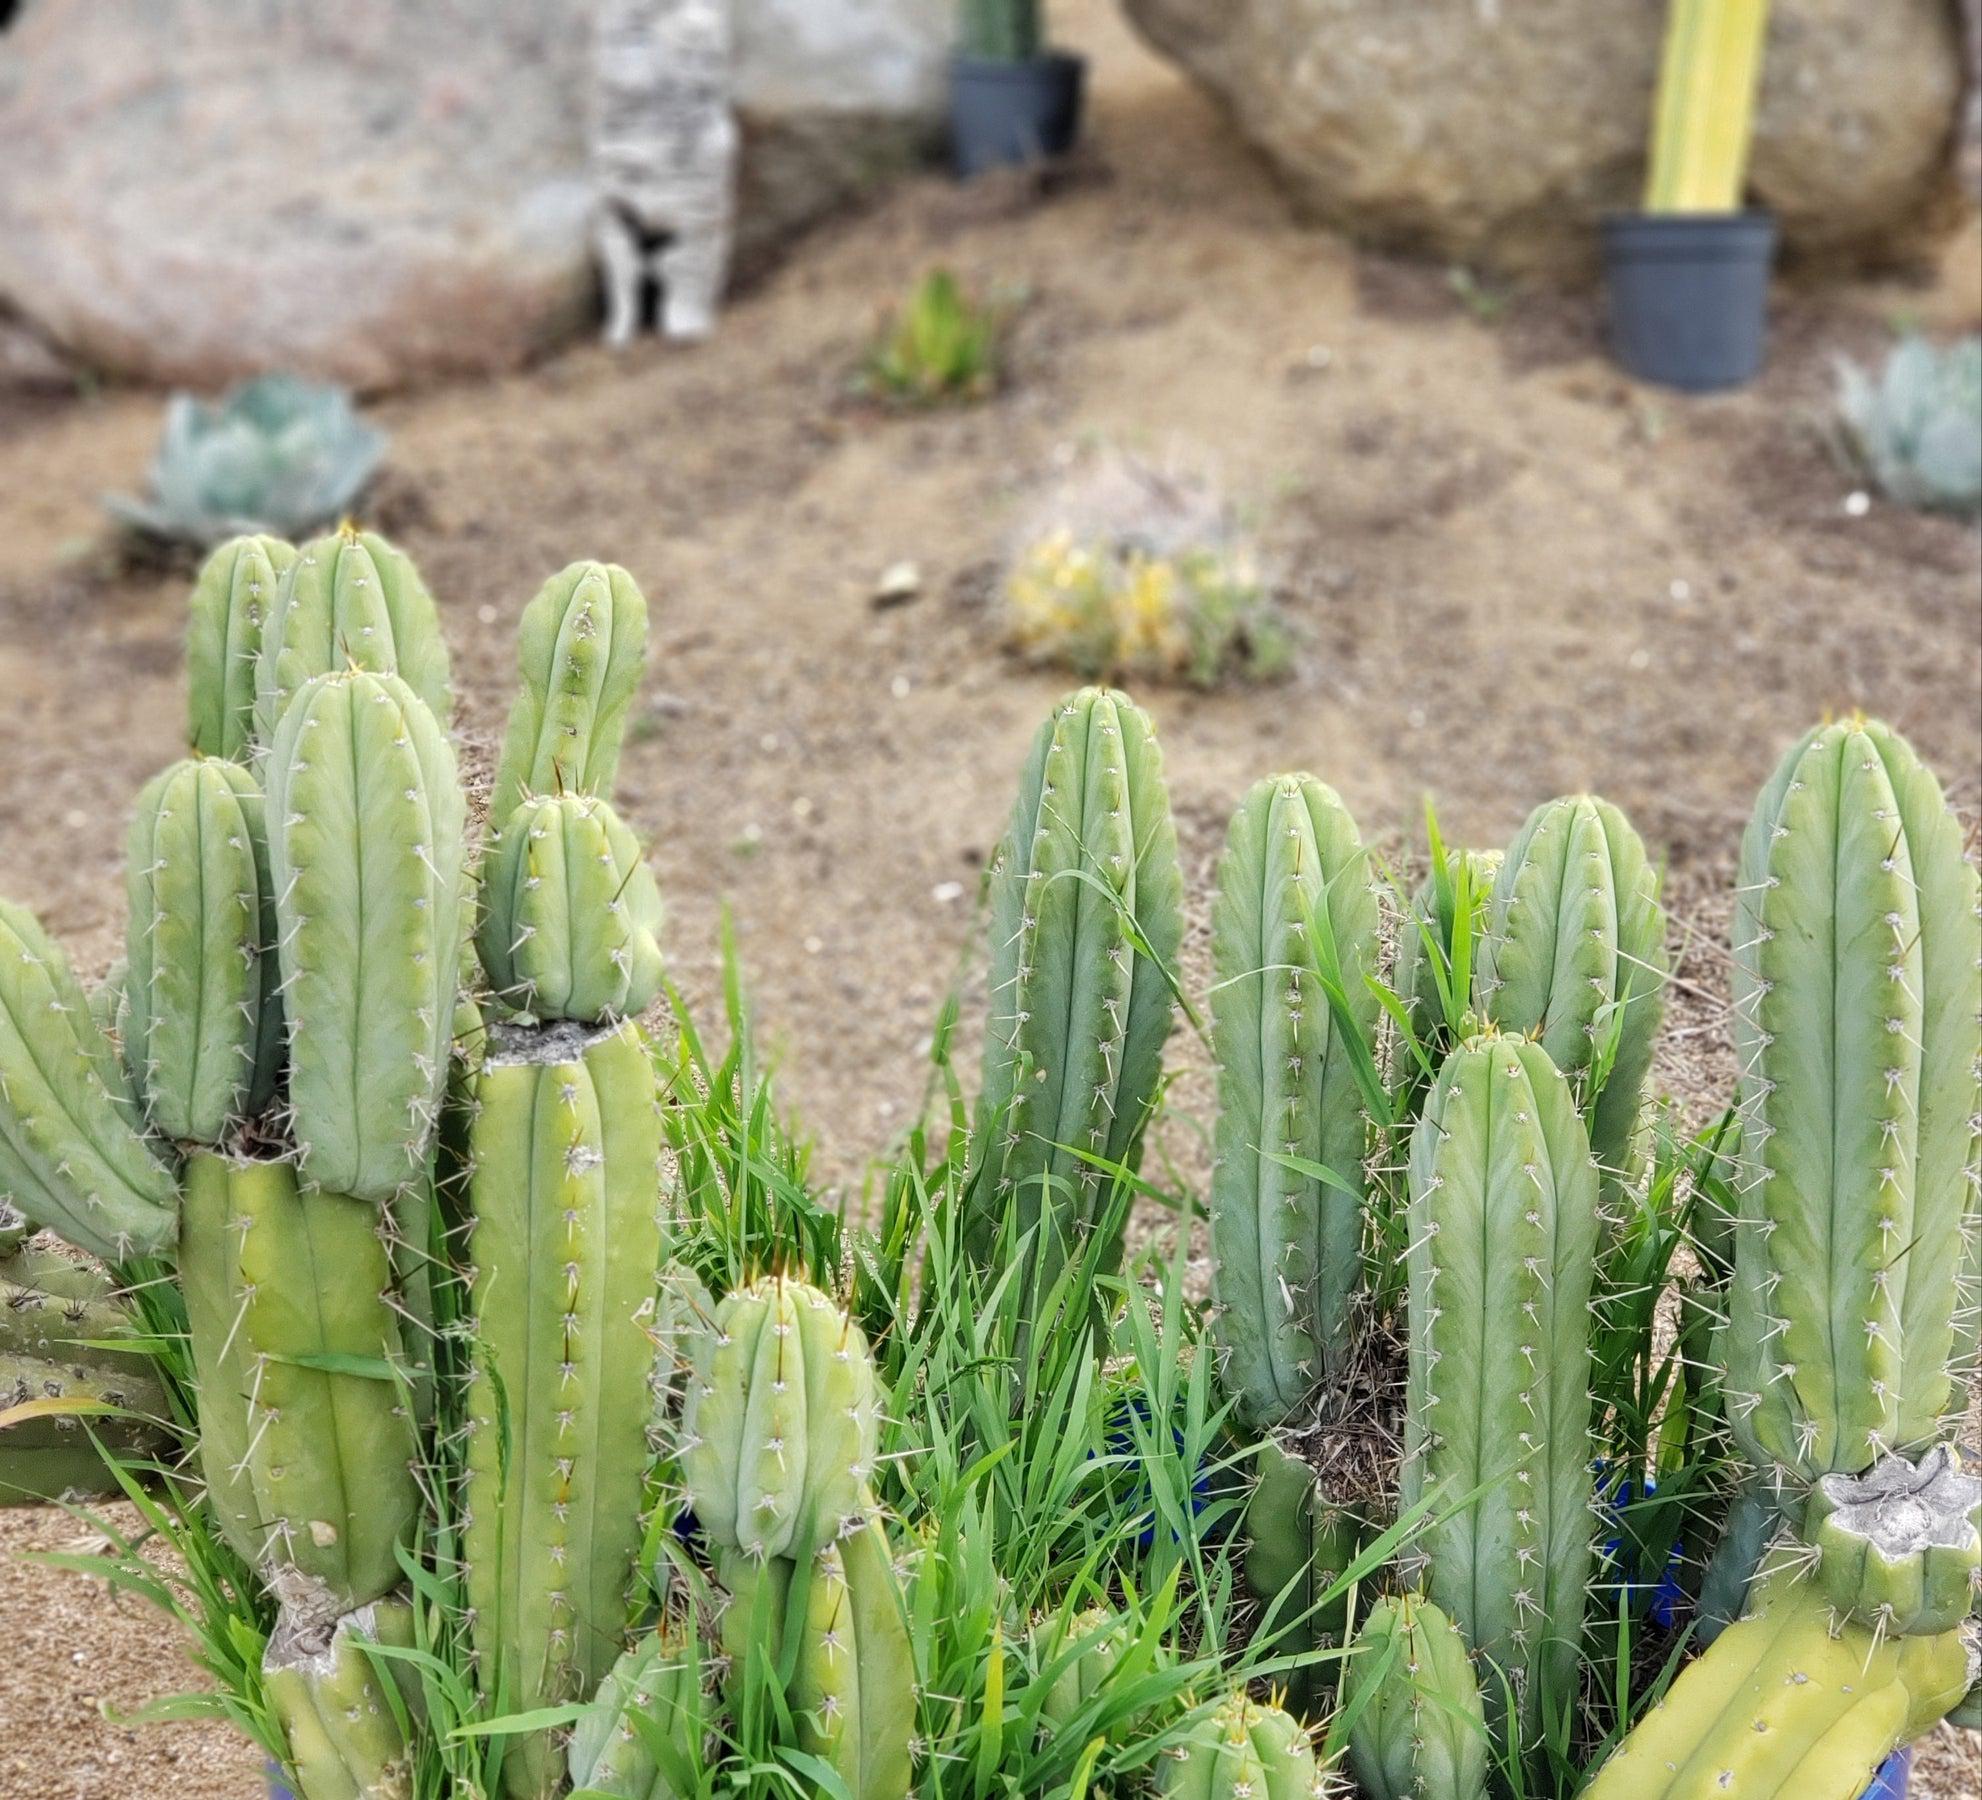 #EC69 EXACT Trichocereus Peruvianus Victoria Cactus Cutting 7-8"-Cactus - Large - Exact-The Succulent Source